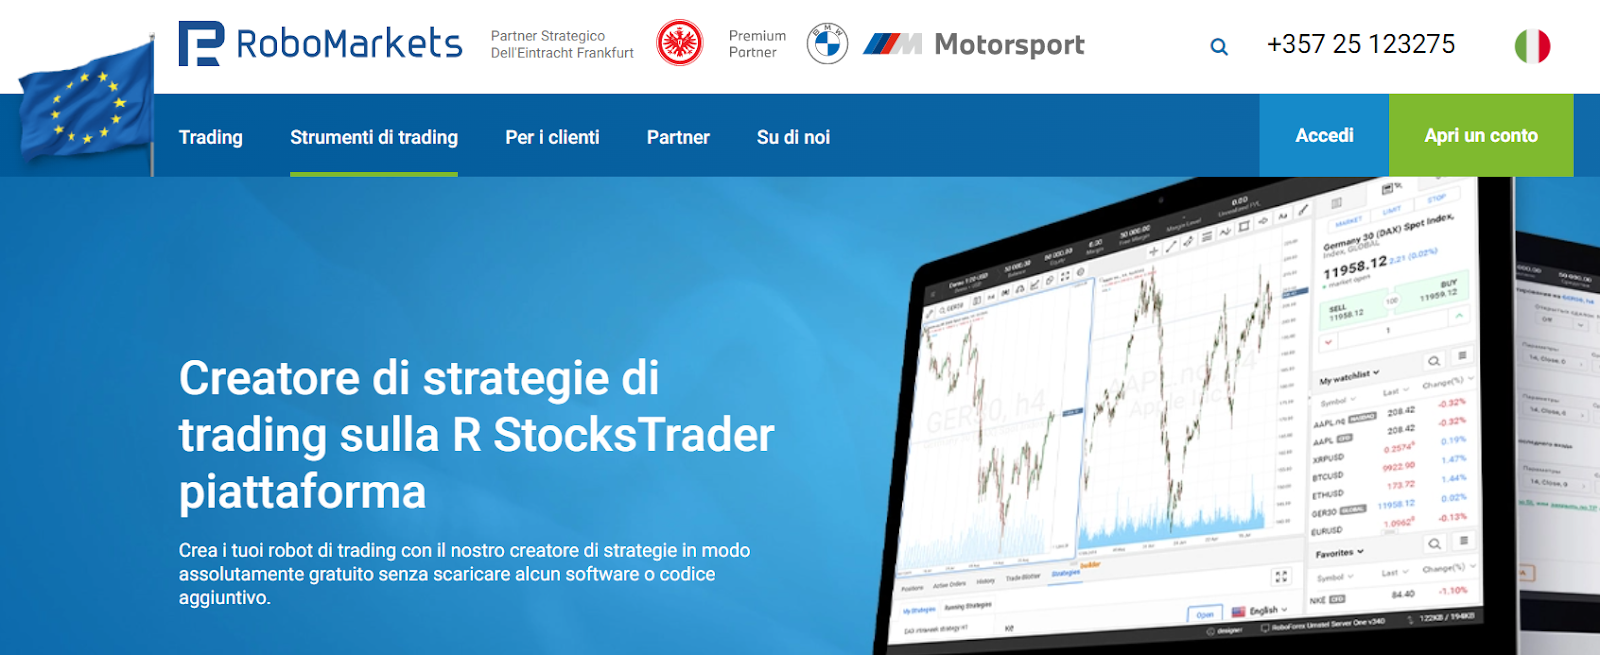 Strumenti utili - Creatore di strategie di trading sulla R StocksTrader